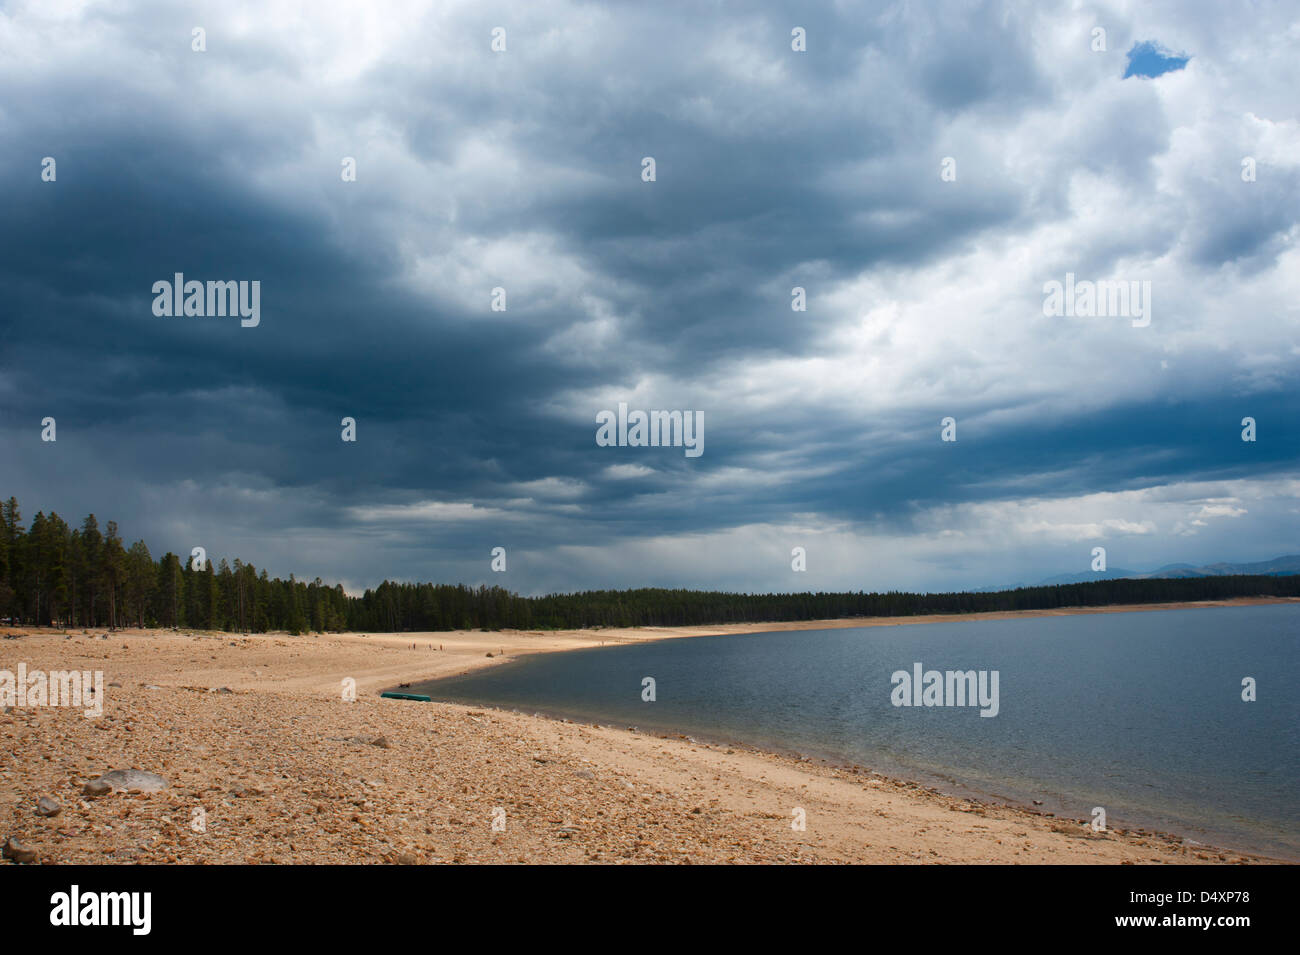 Wogende Gewitterwolken sind ein willkommener Anblick an einem Bergsee, der den Effekt einer lang andauernden Dürre anzeigt. Stockfoto